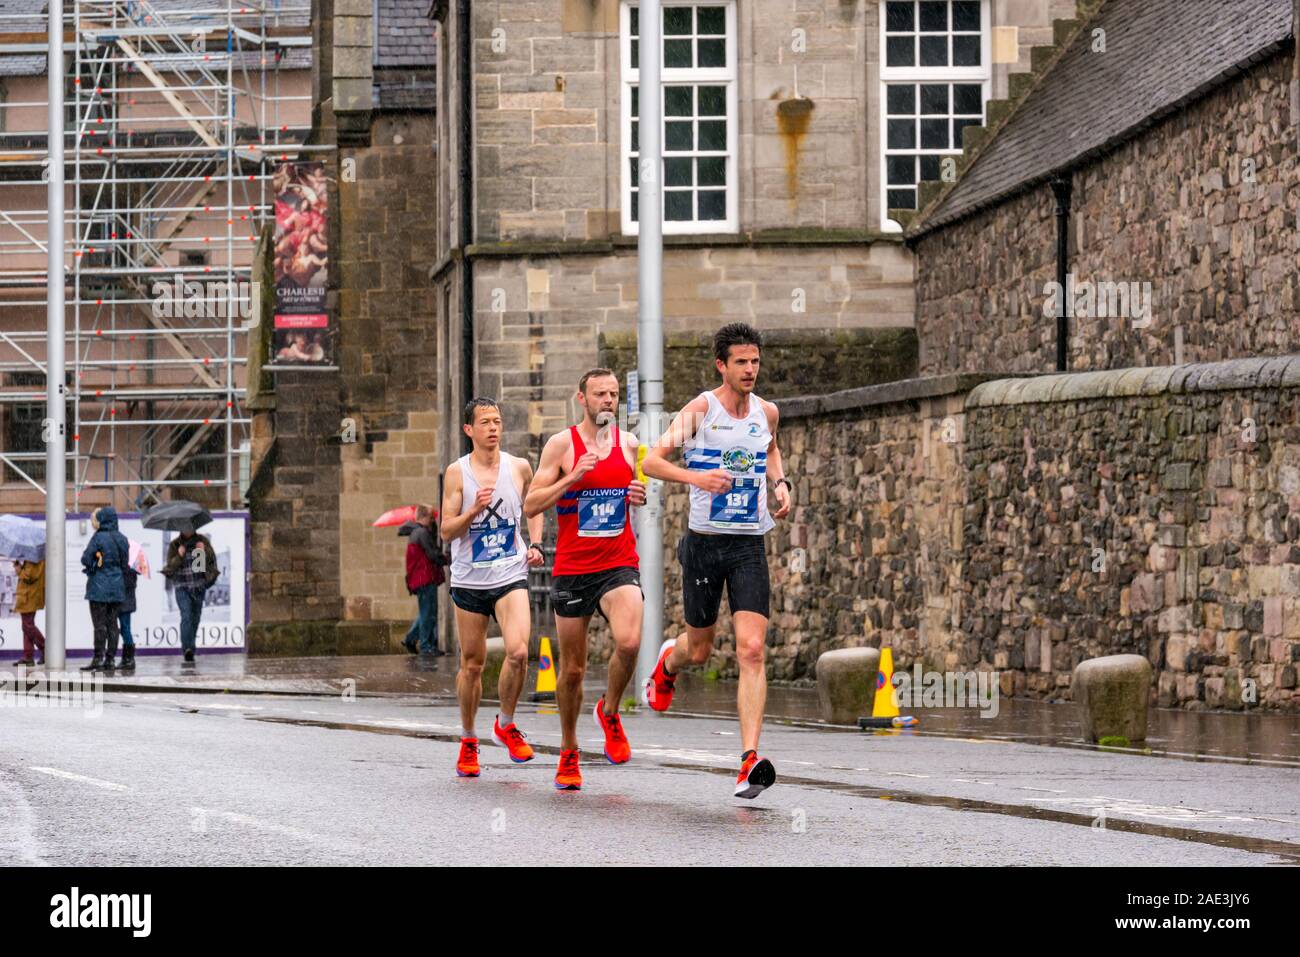 Festival Edinburgh Marathon 2019 coureurs sur un jour pluvieux, Édimbourg, Écosse, Royaume-Uni. James Lee, Chettle Fedden, Stephen Conroy, les coureurs de marathon Banque D'Images